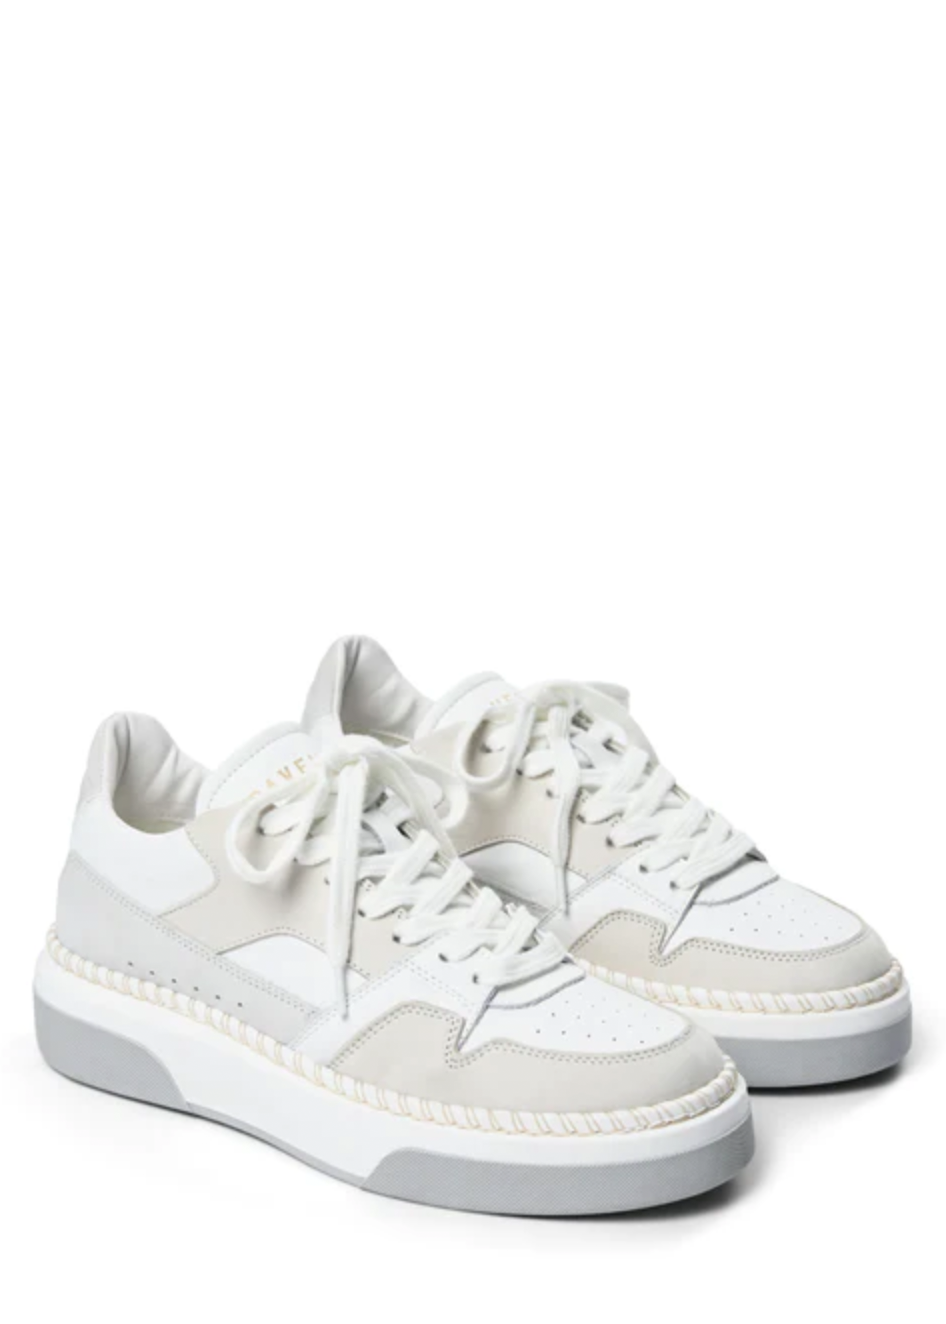 Sneaker Boo, White/Grey Pavement